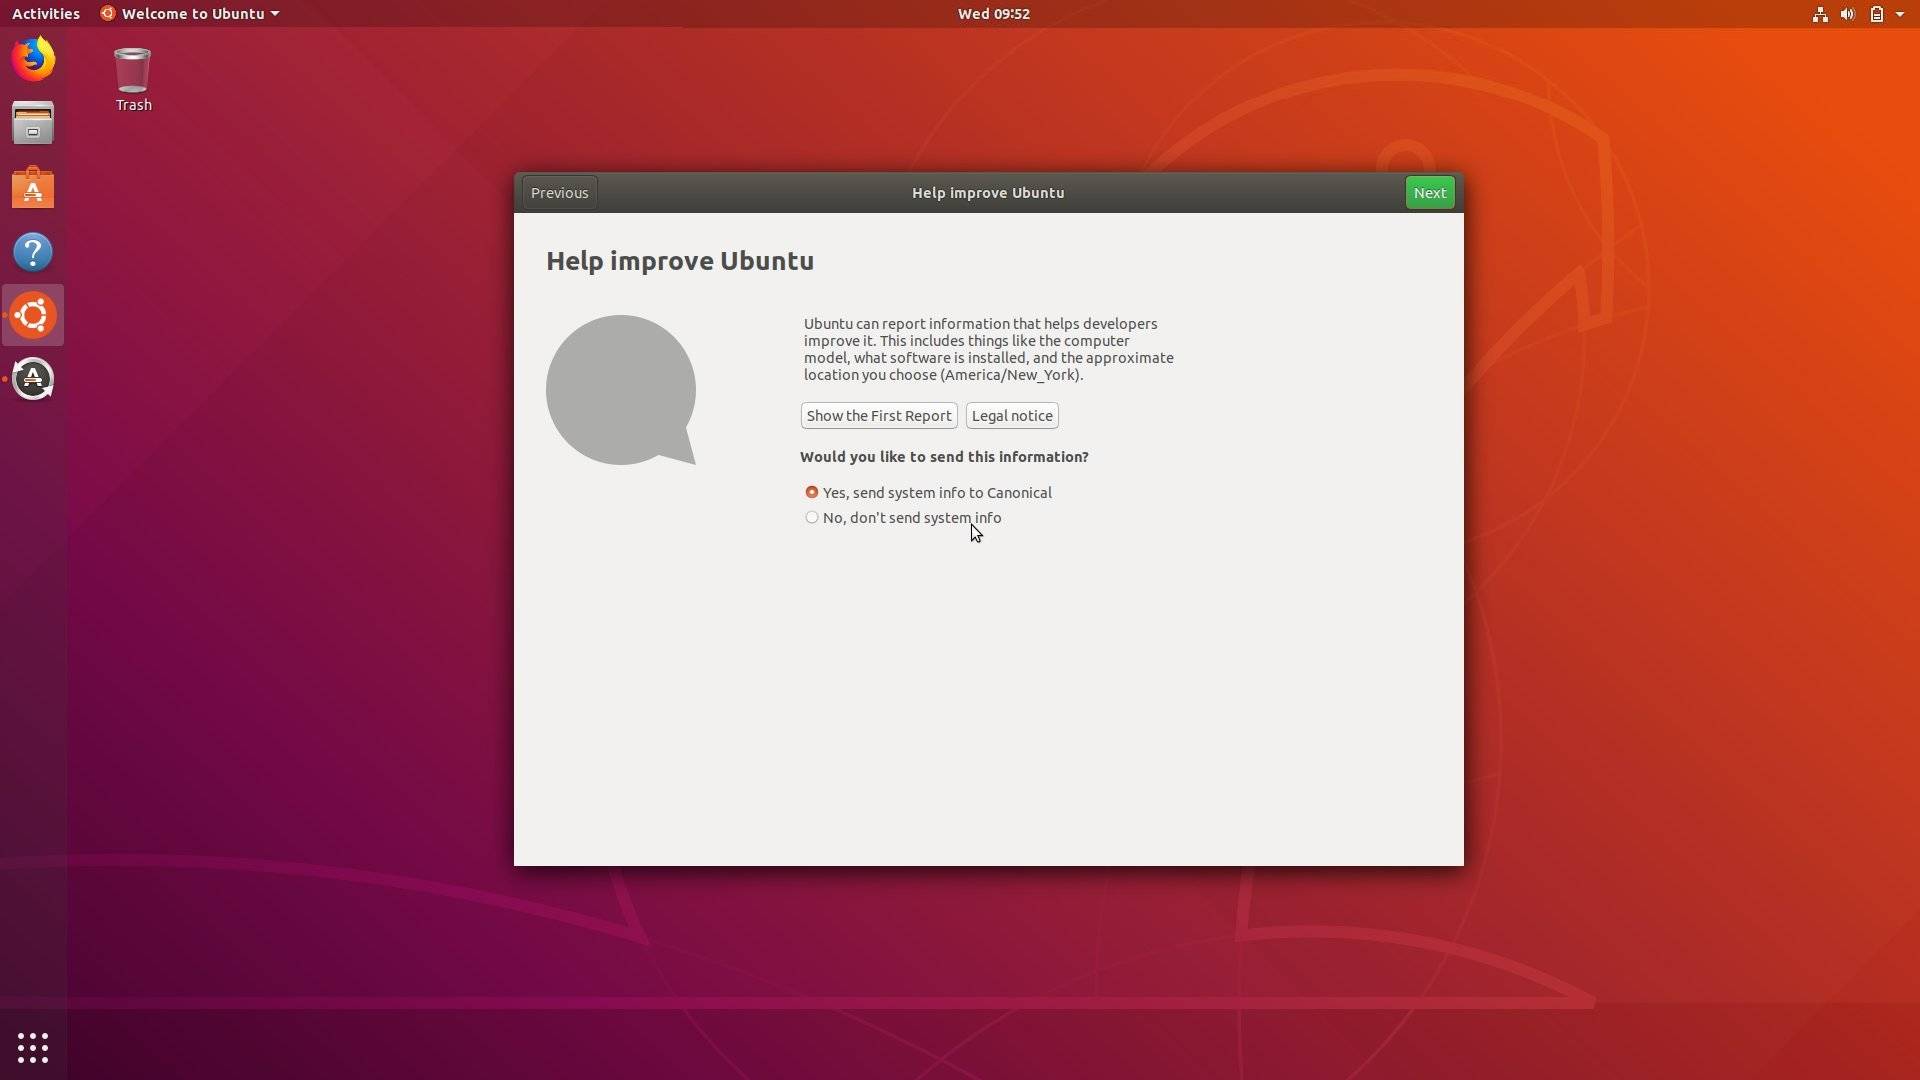 desklets for ubuntu 18.04 deb file